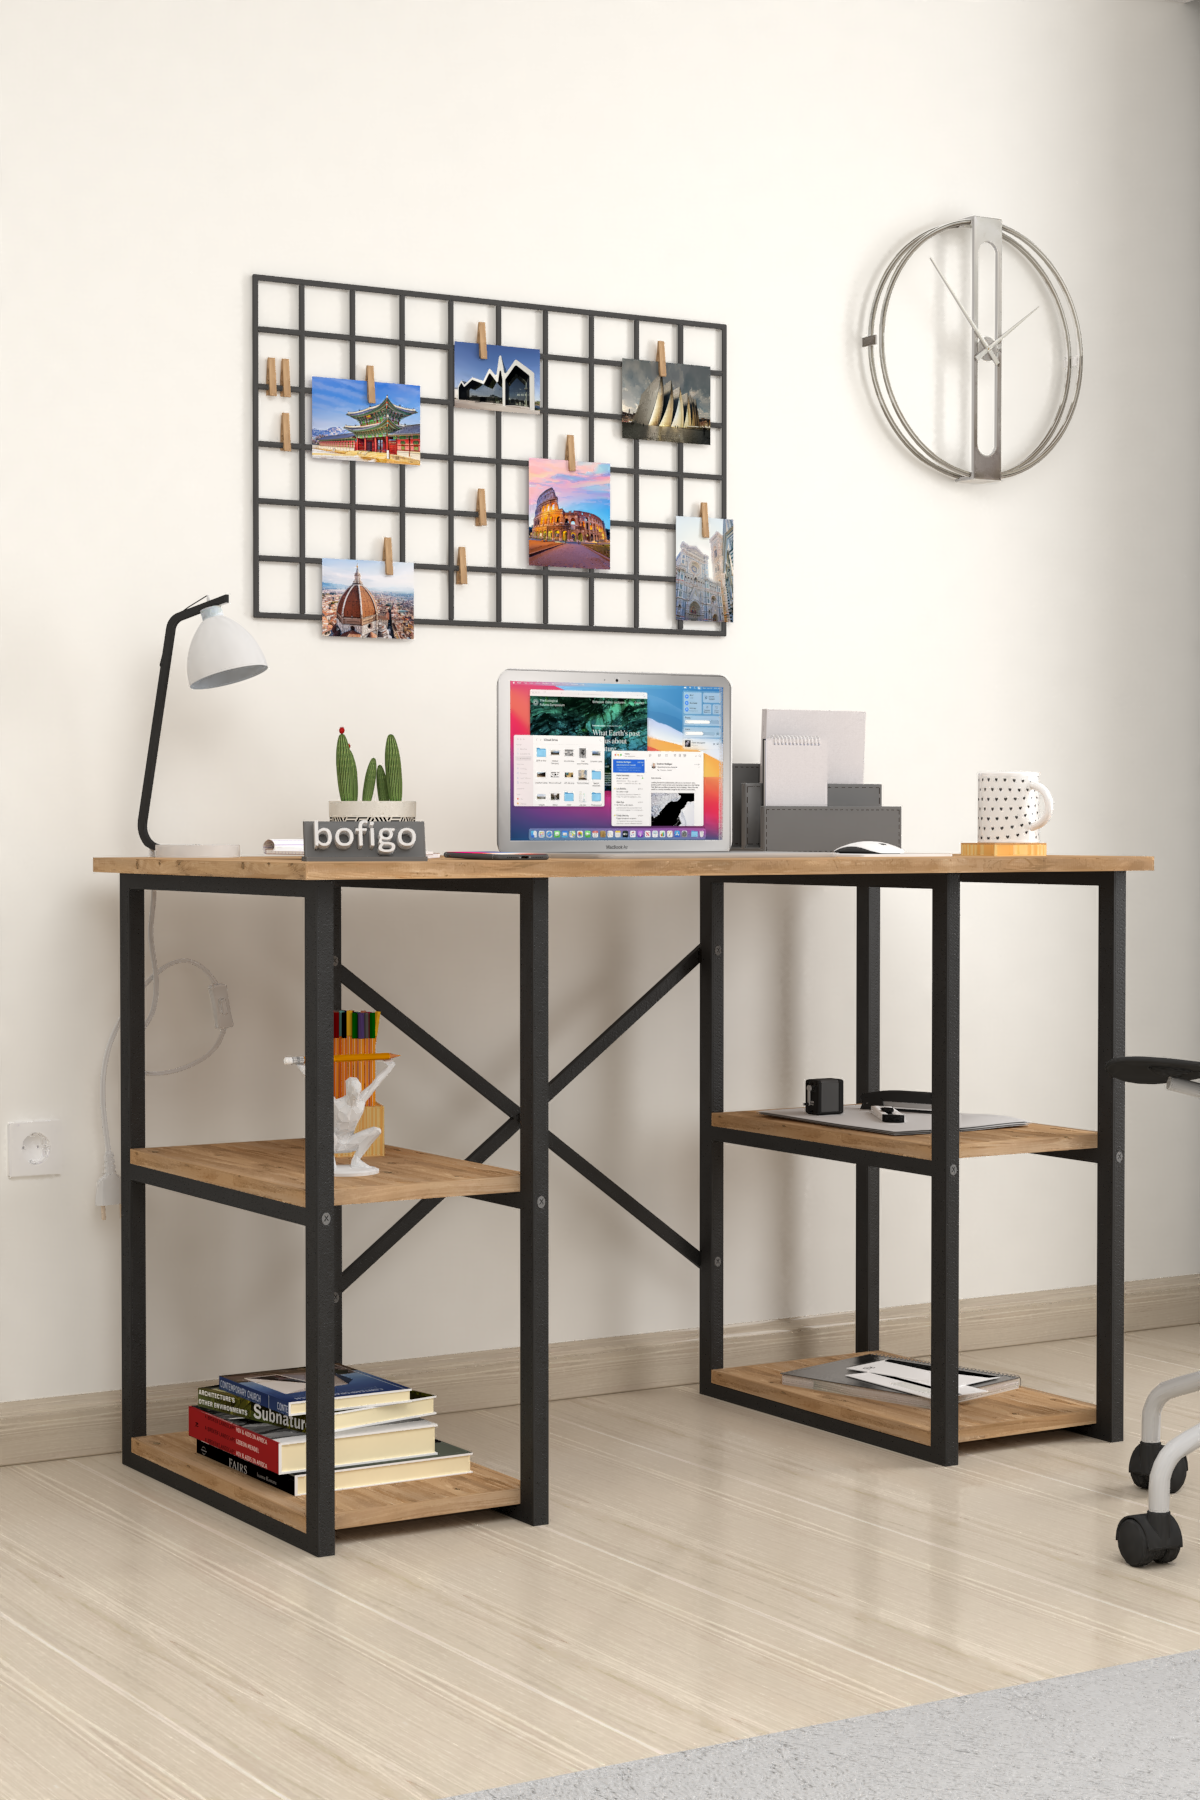 Bofigo 4 Shelf Desk 60x120 cm Pine